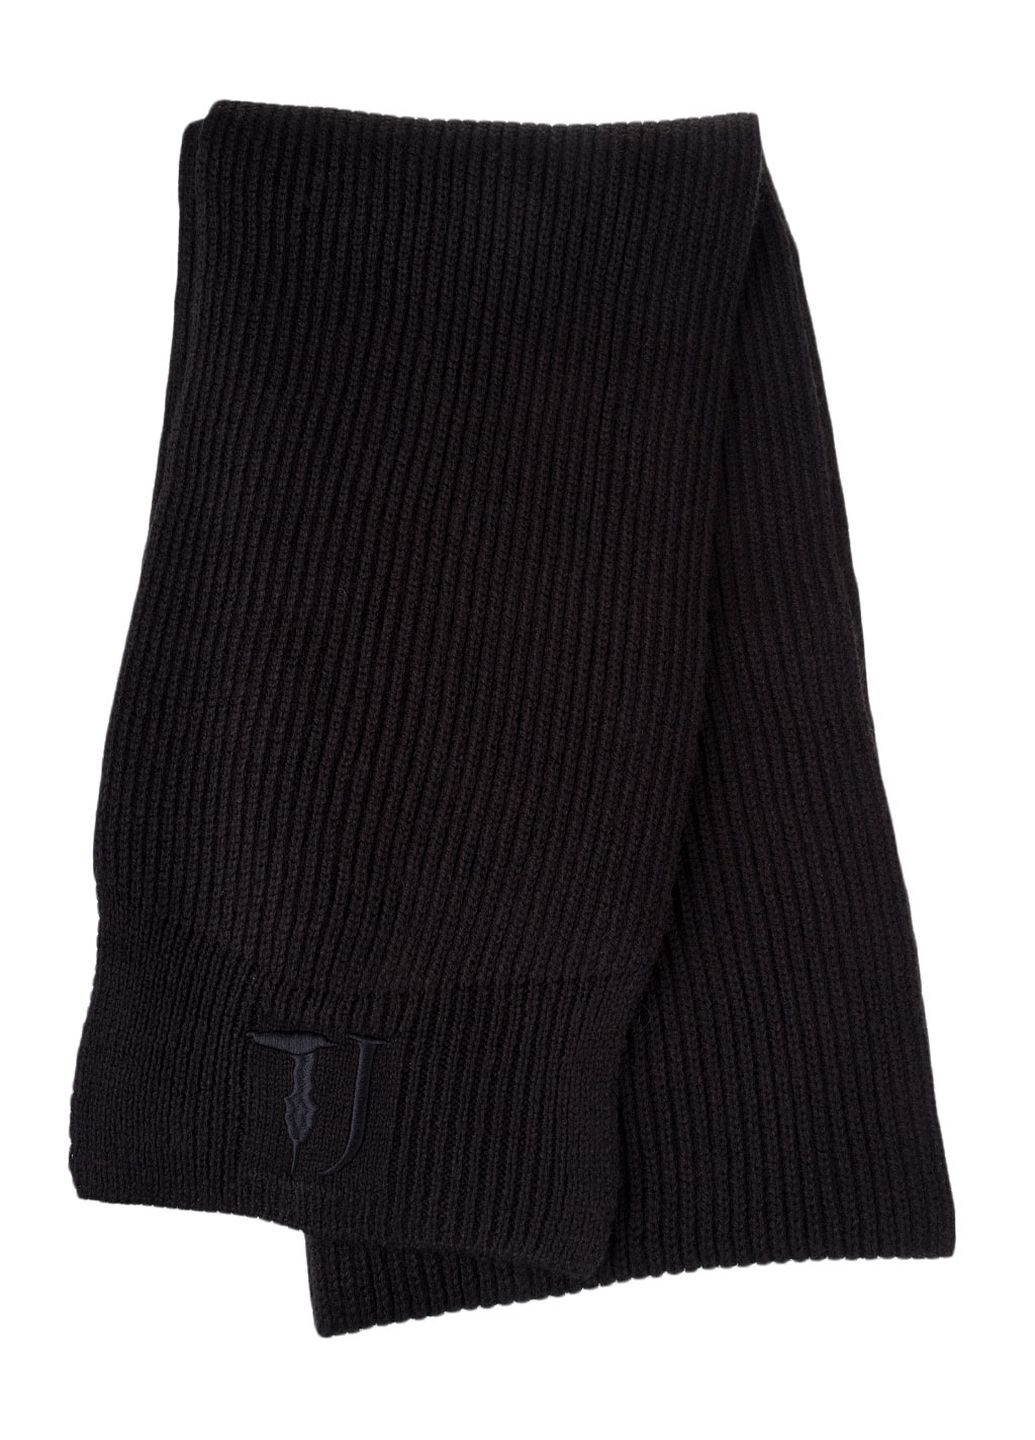 Чорний зимній комплект (шапка / шарф / рукавички) Trussardi Jeans